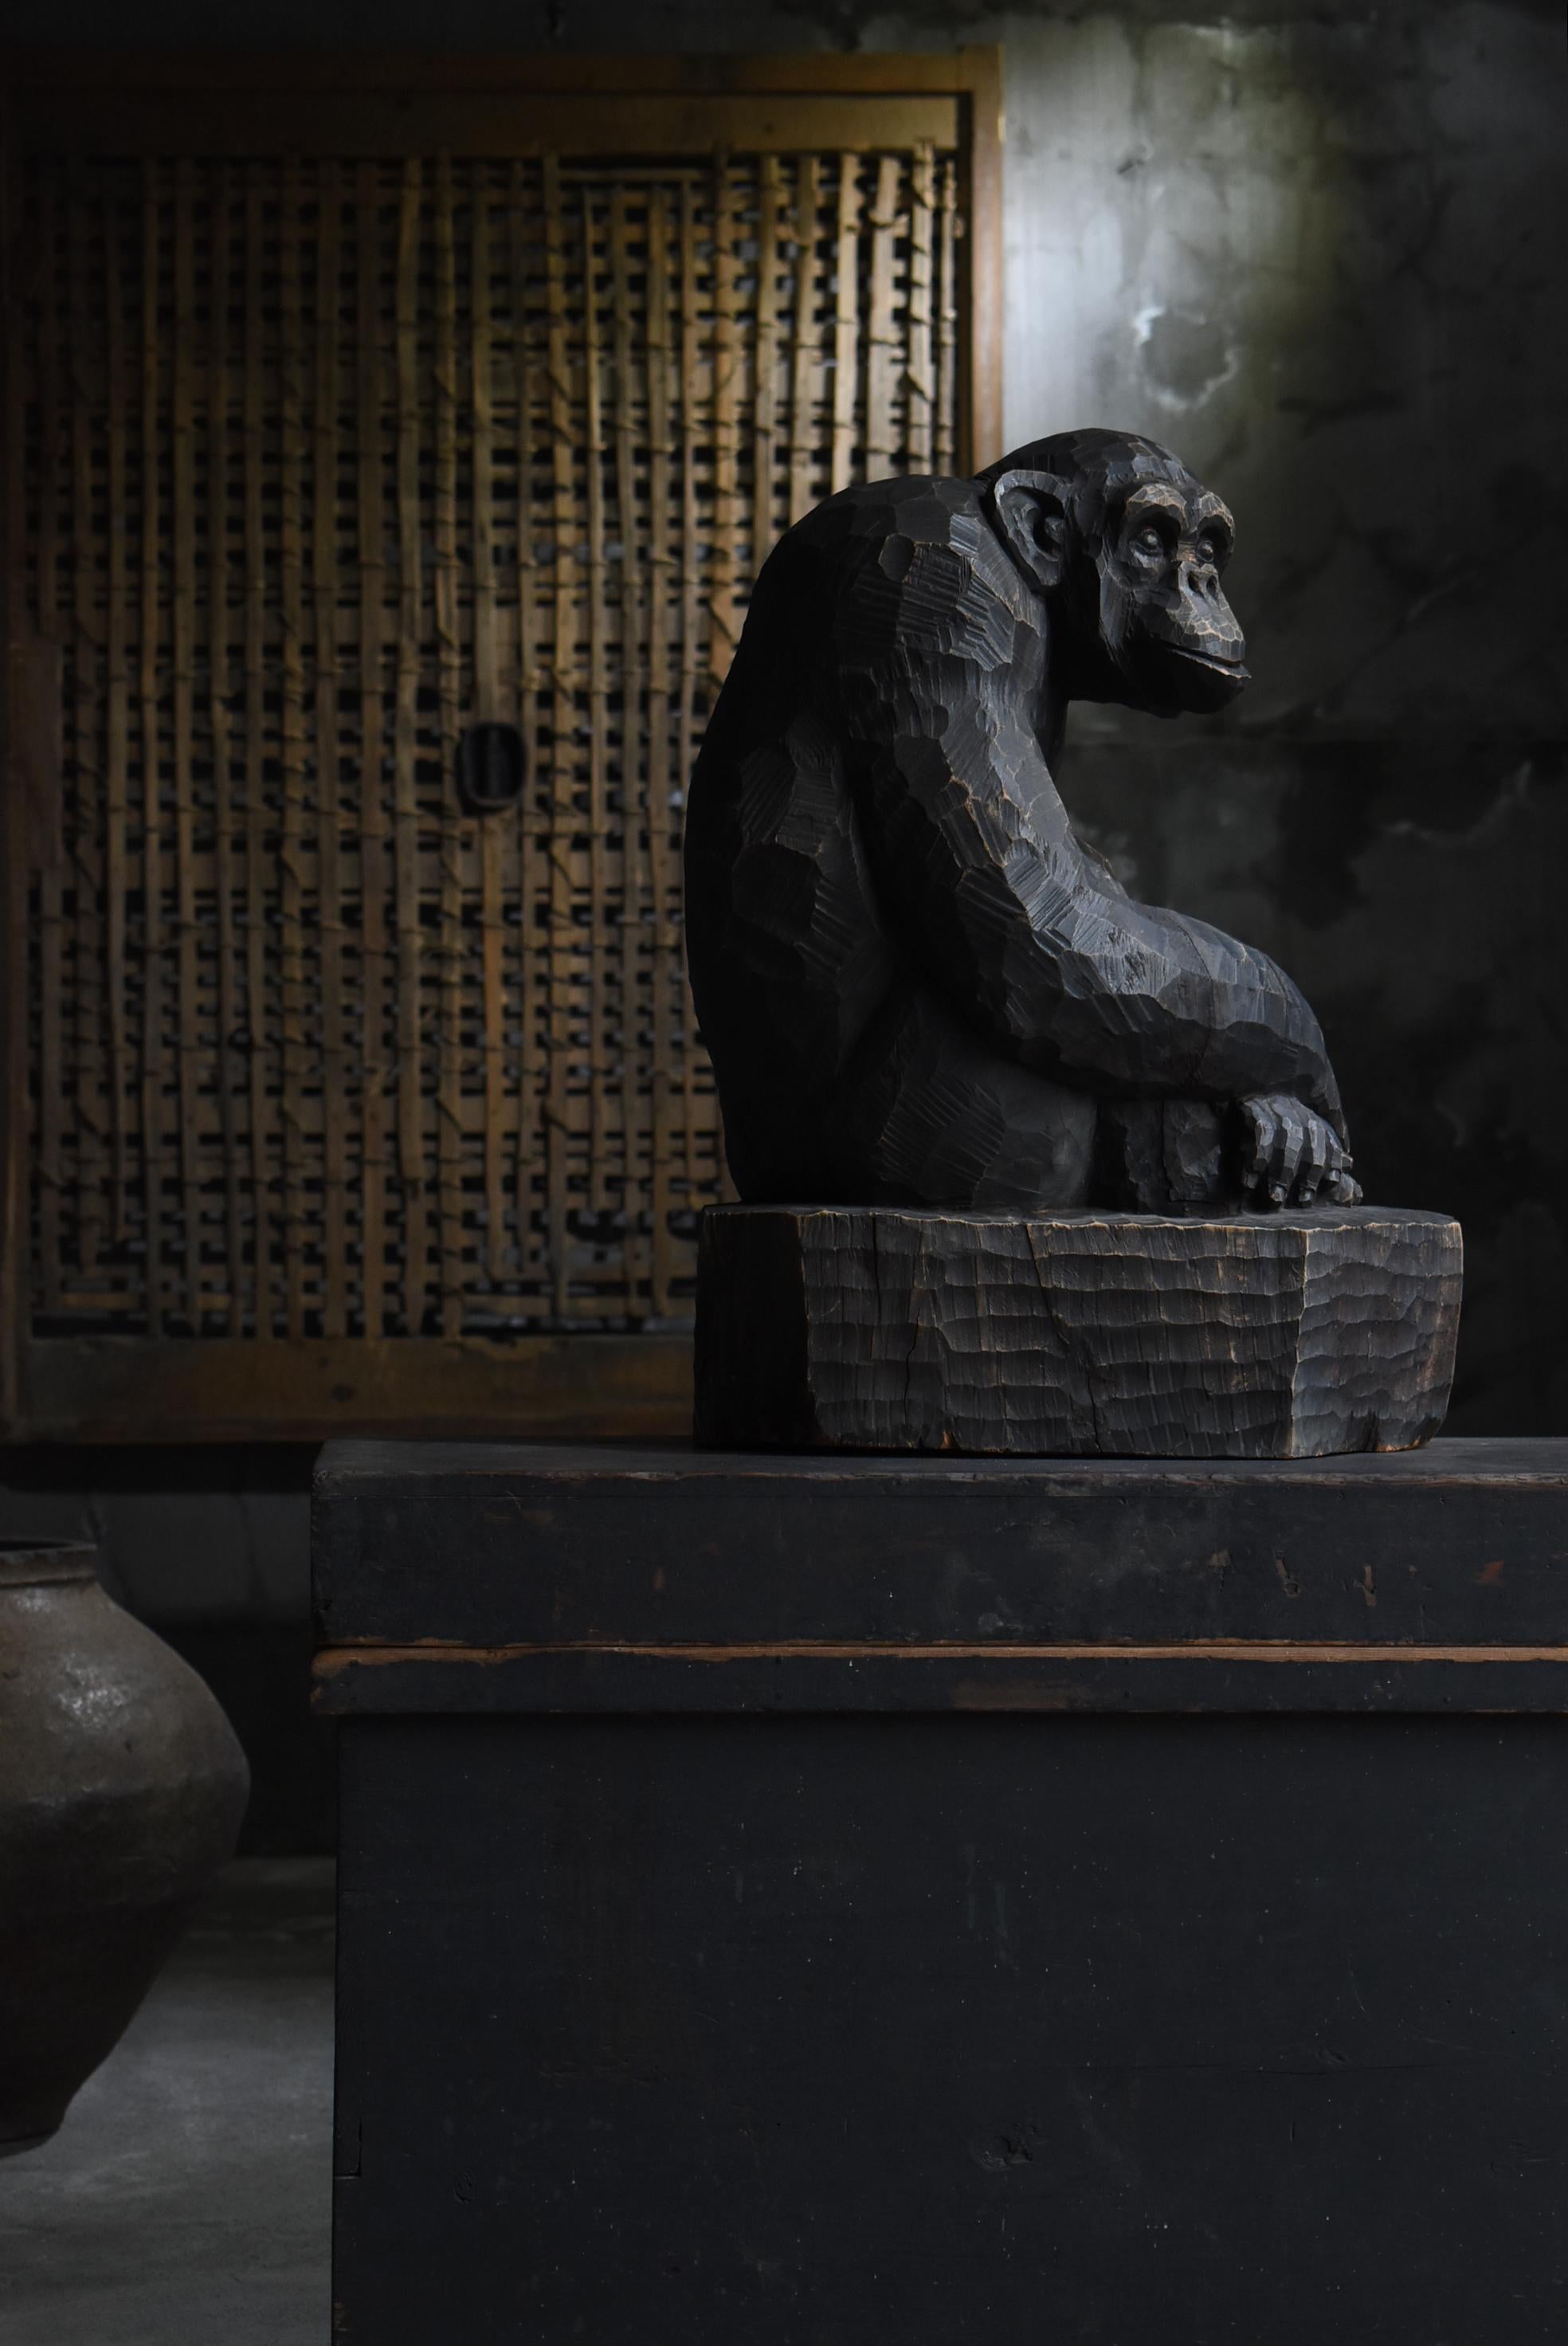 Il s'agit d'une ancienne sculpture japonaise en bois représentant un chimpanzé.
Elle date du milieu de la période Shoha (années 1940-1960).
Il est fabriqué en bois de camphrier.

Il s'agit d'une œuvre dynamique, audacieusement taillée dans un grand